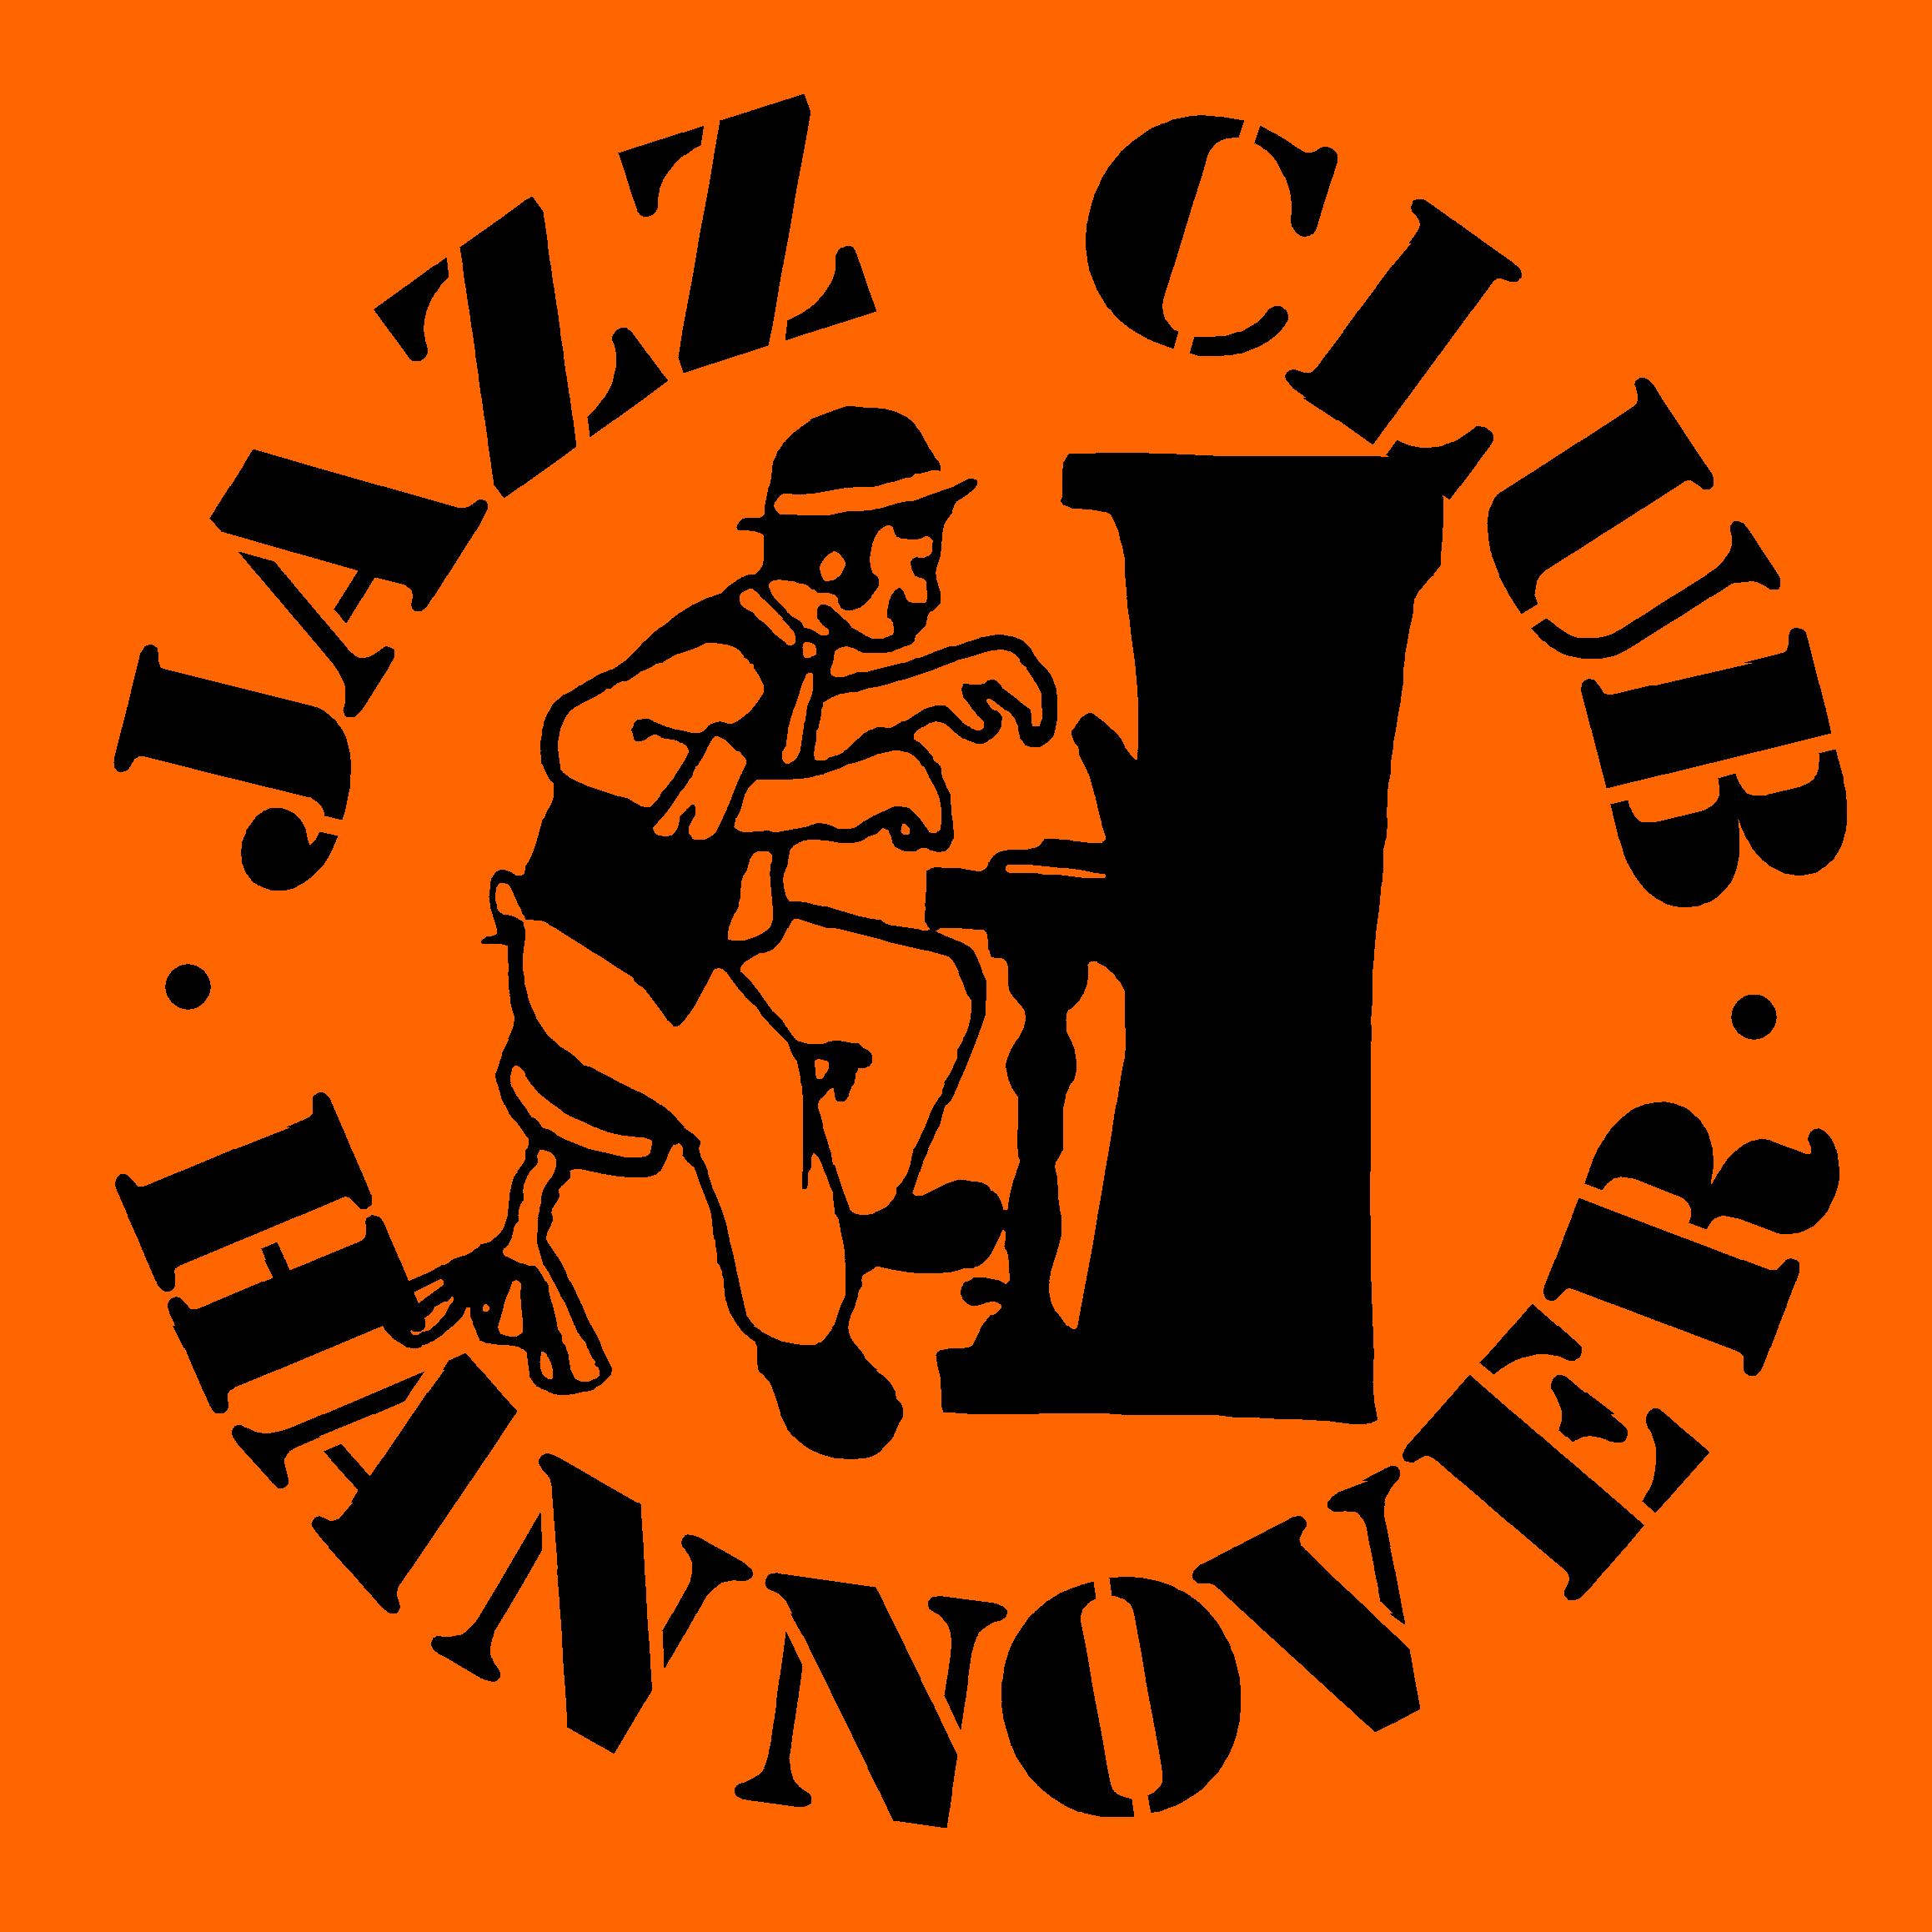 Logo Jazz Club